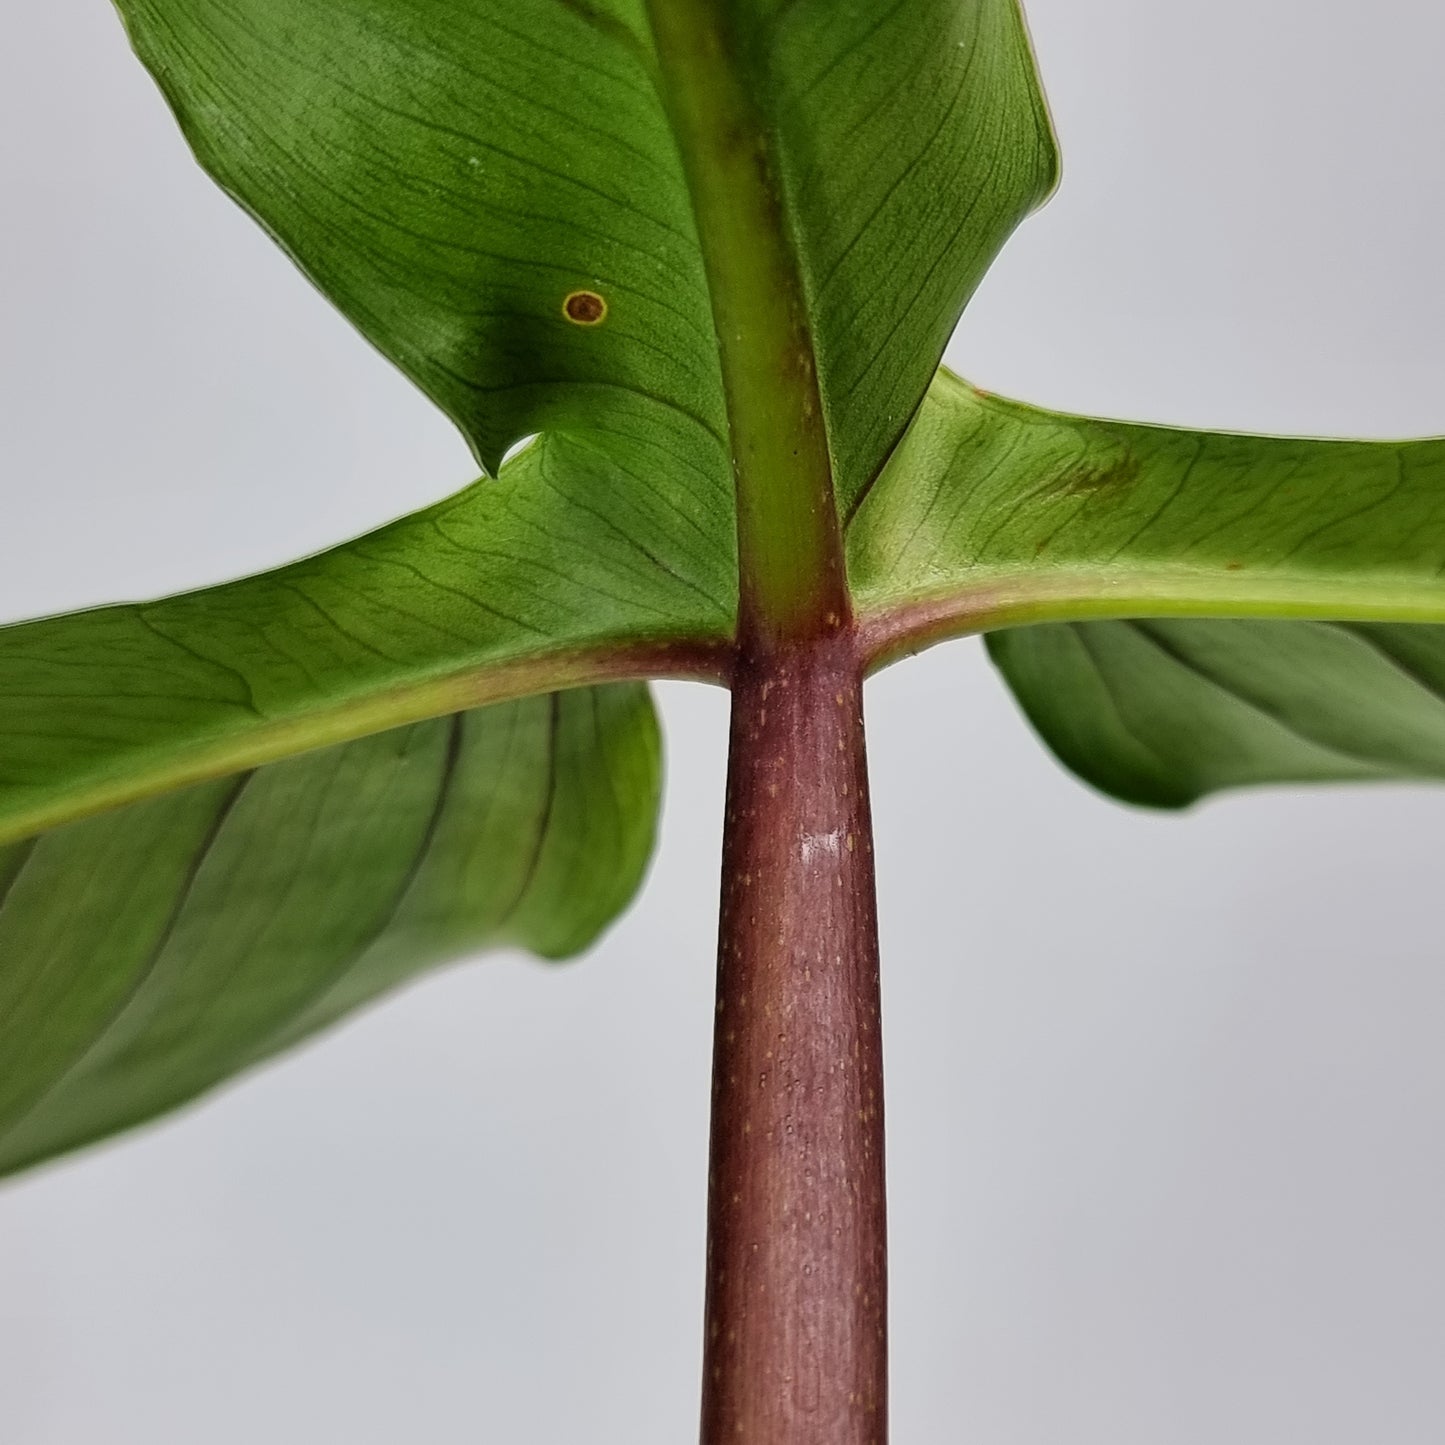 rare Philodendron sanctamartinense for sale in Perth Australia